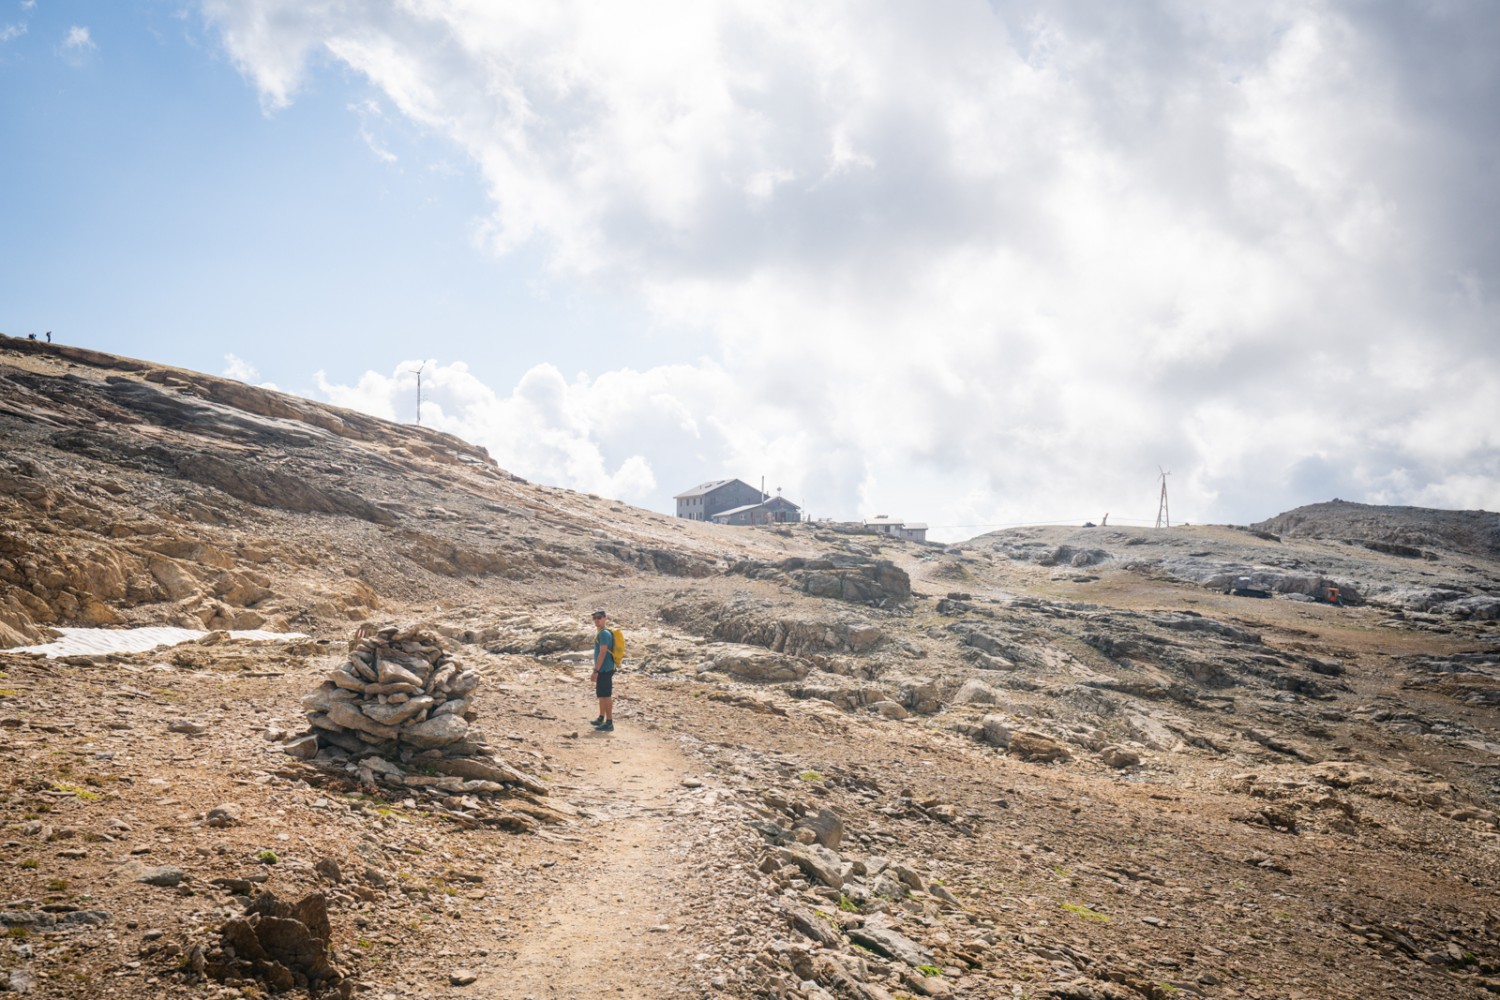 Nach dem steilen Anstieg kommt die Lötschenpasshütte in Sicht. Bild: Wanderblondies